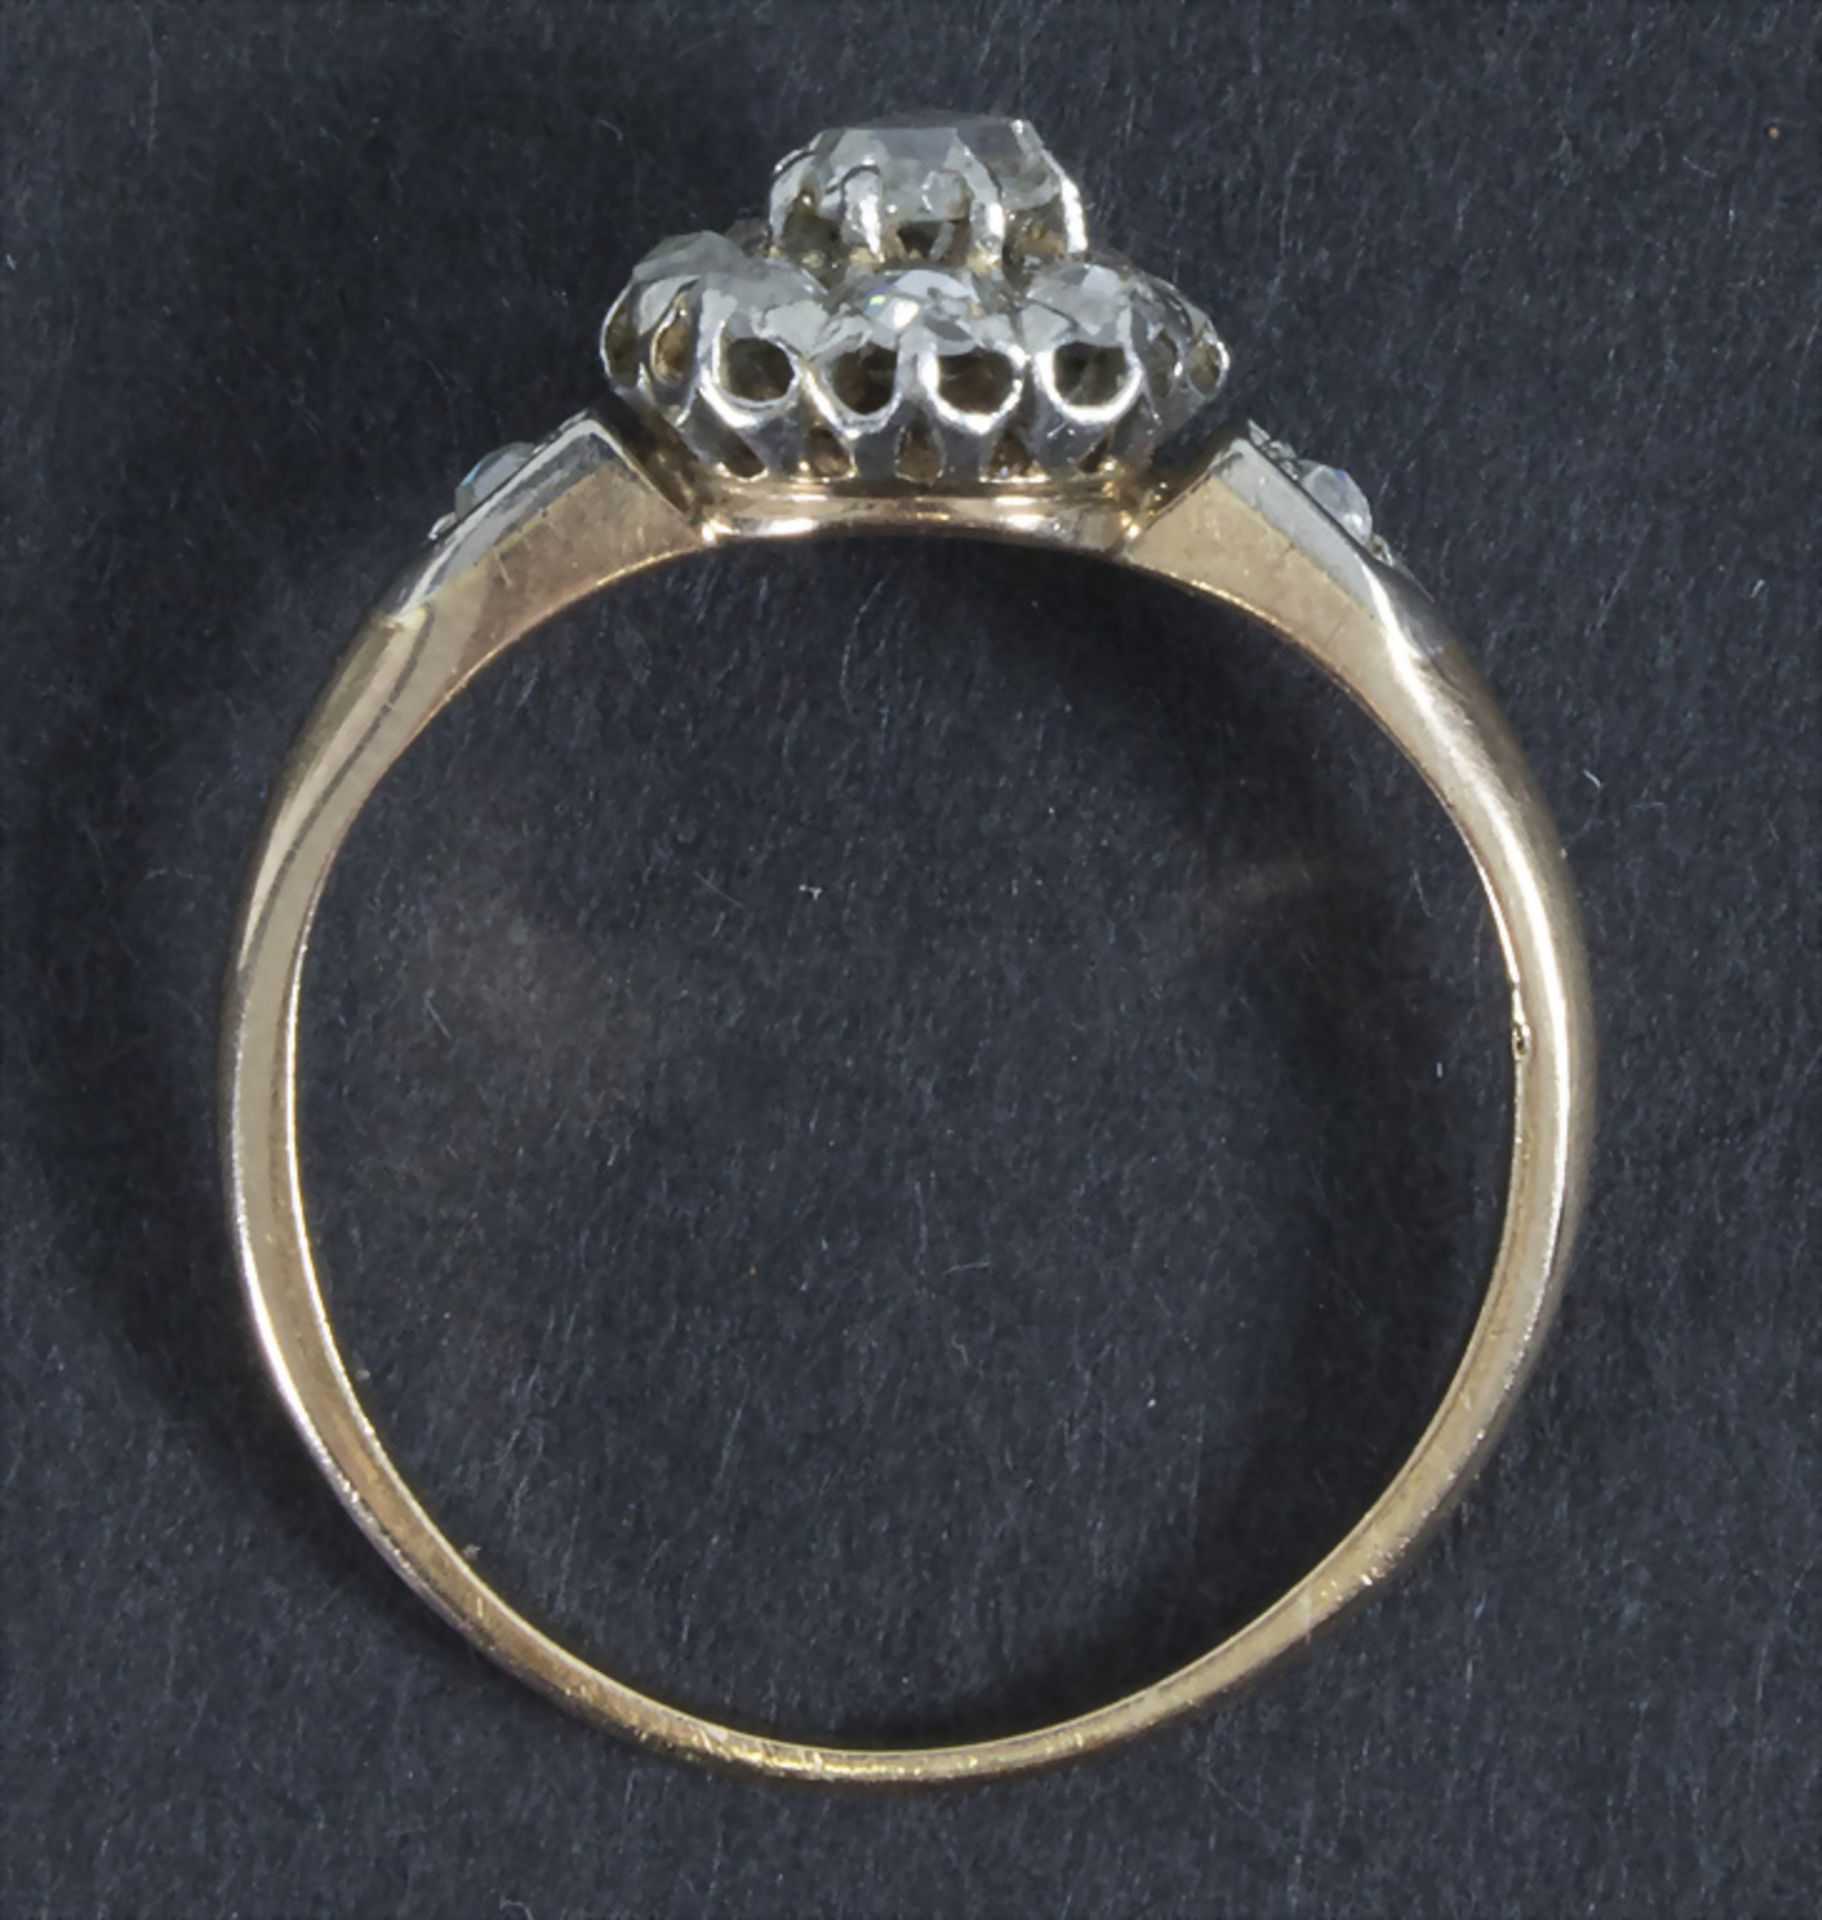 Damenring mit Diamanten / An 18k gold ring with diamonds, um 1910 - Image 2 of 2